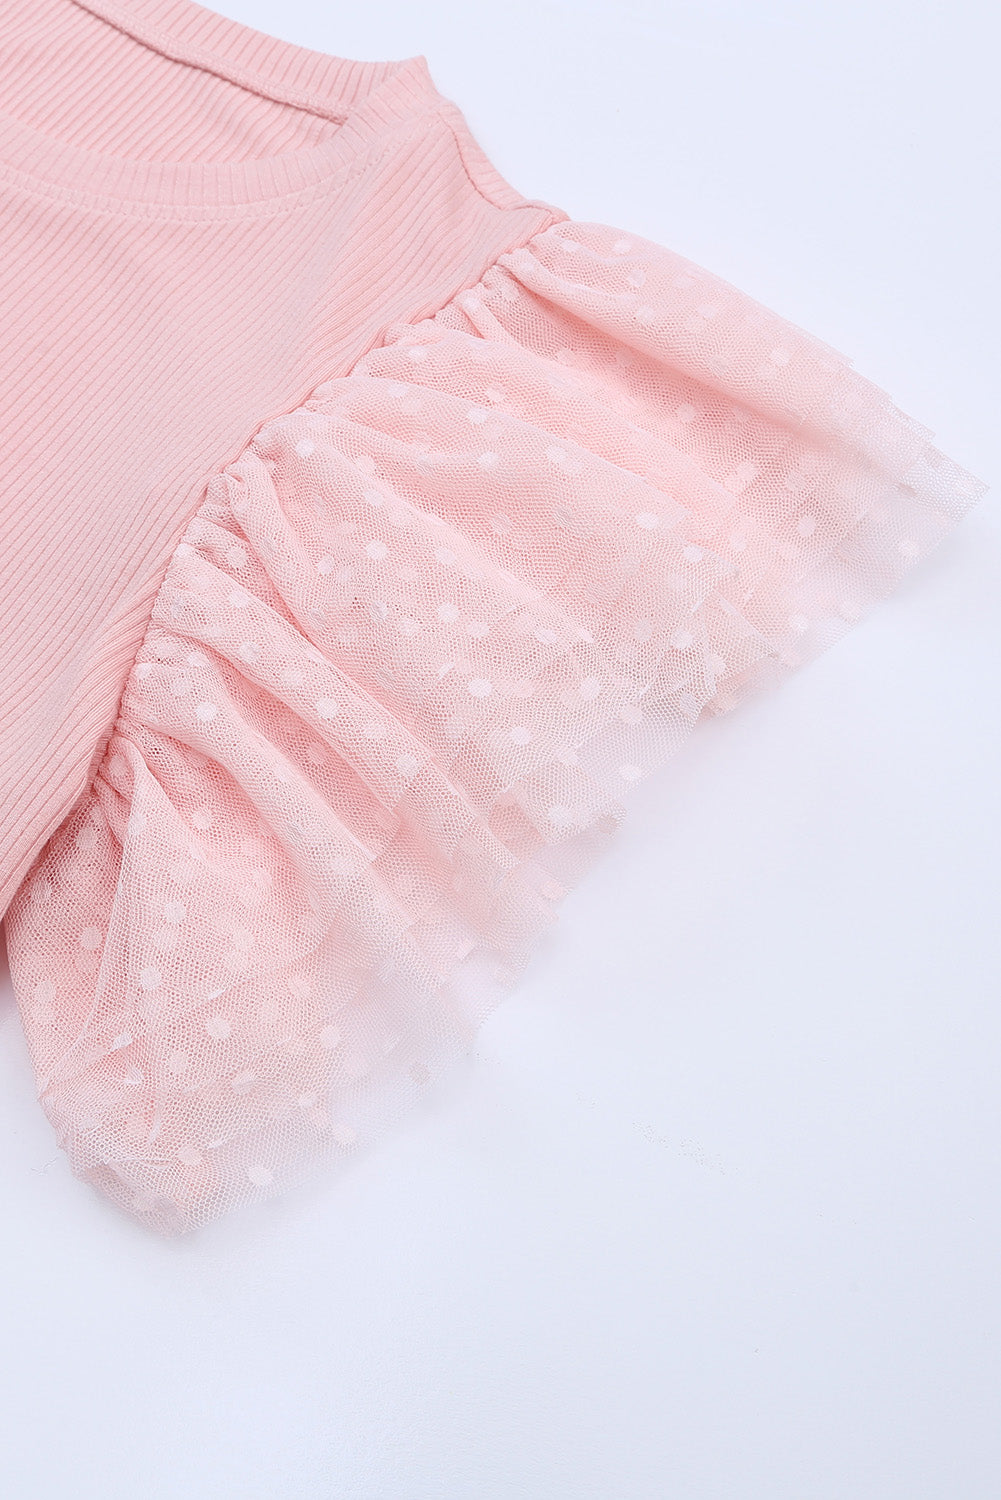 Rožnata pletena oprijeta obleka z rokavi iz tila in naborki